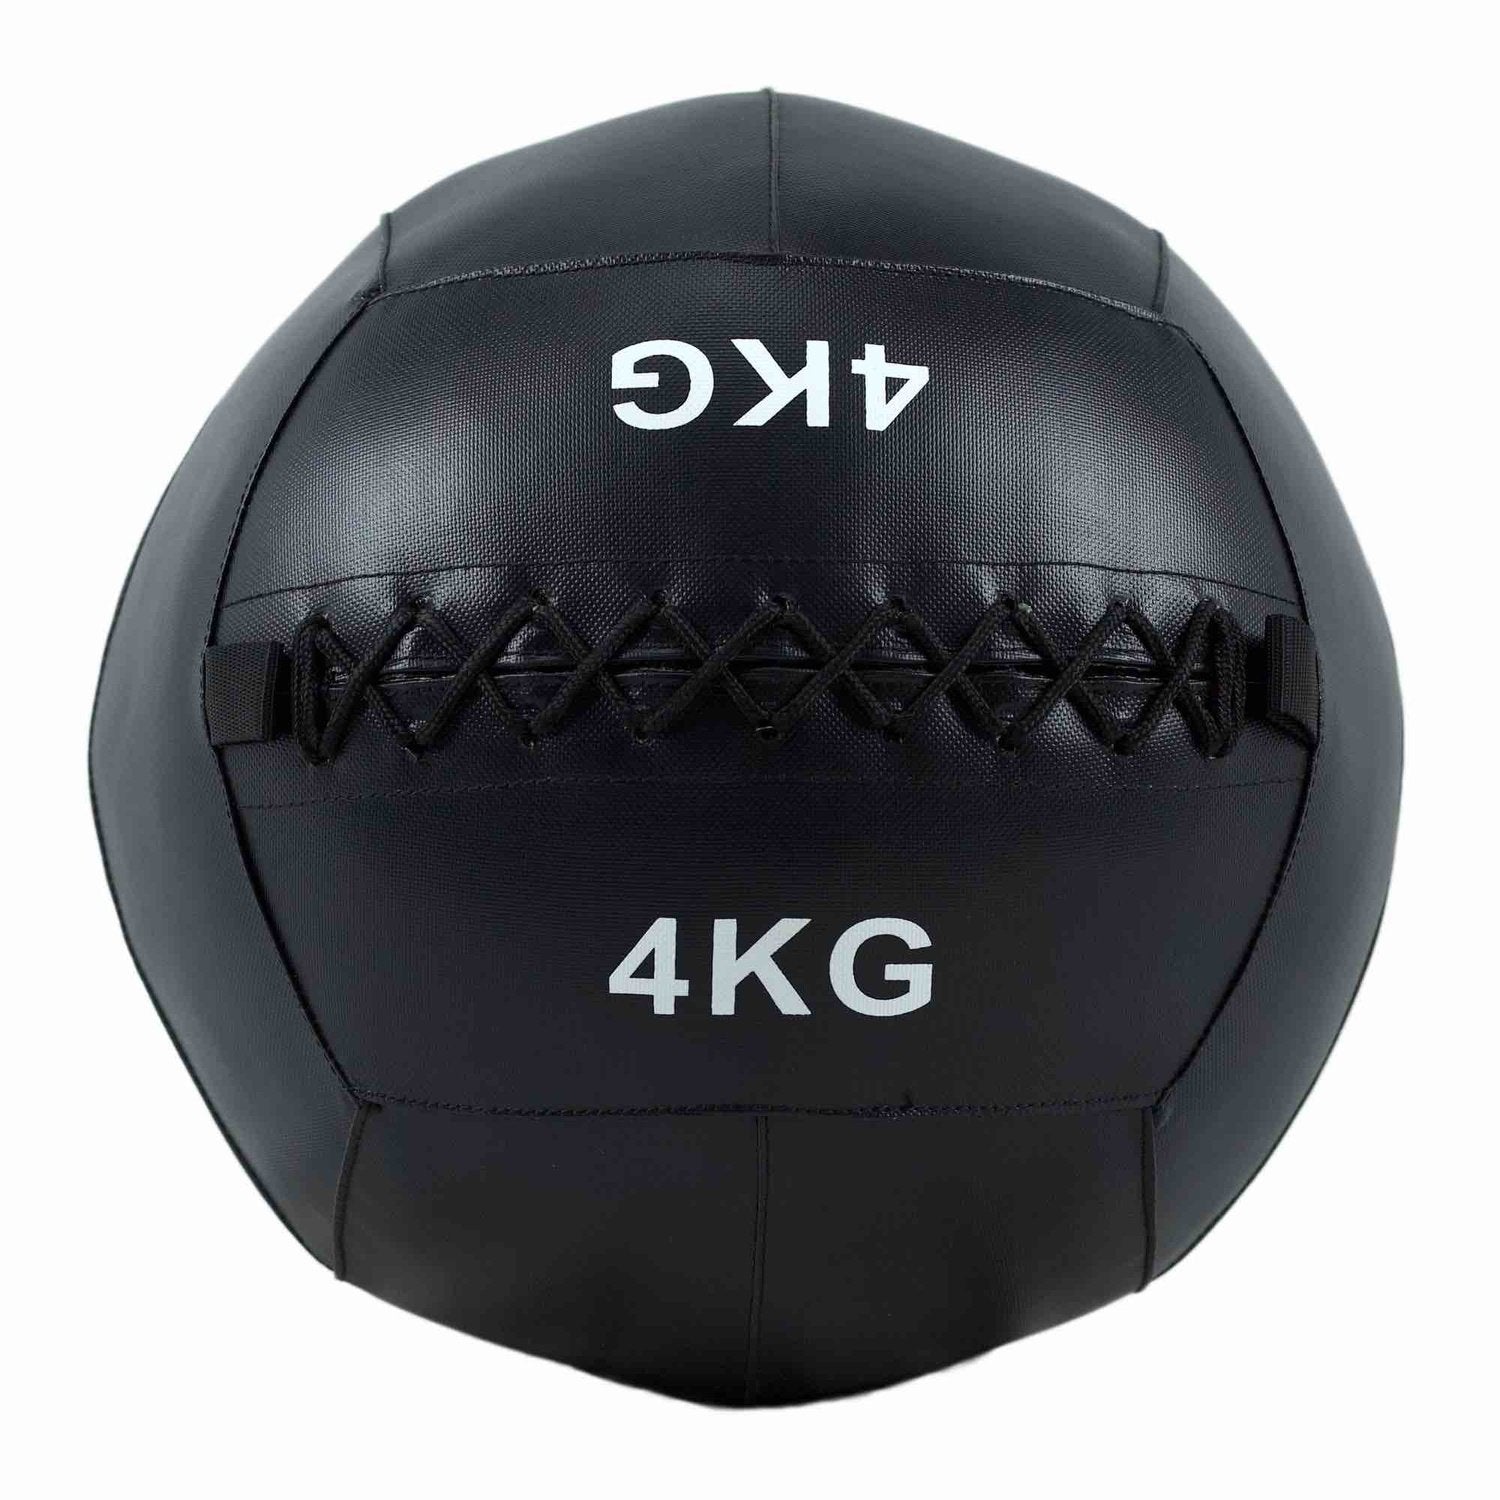 HighPowered Wallball (Medizinball) 4 kg kaufen bei HighPowered.ch